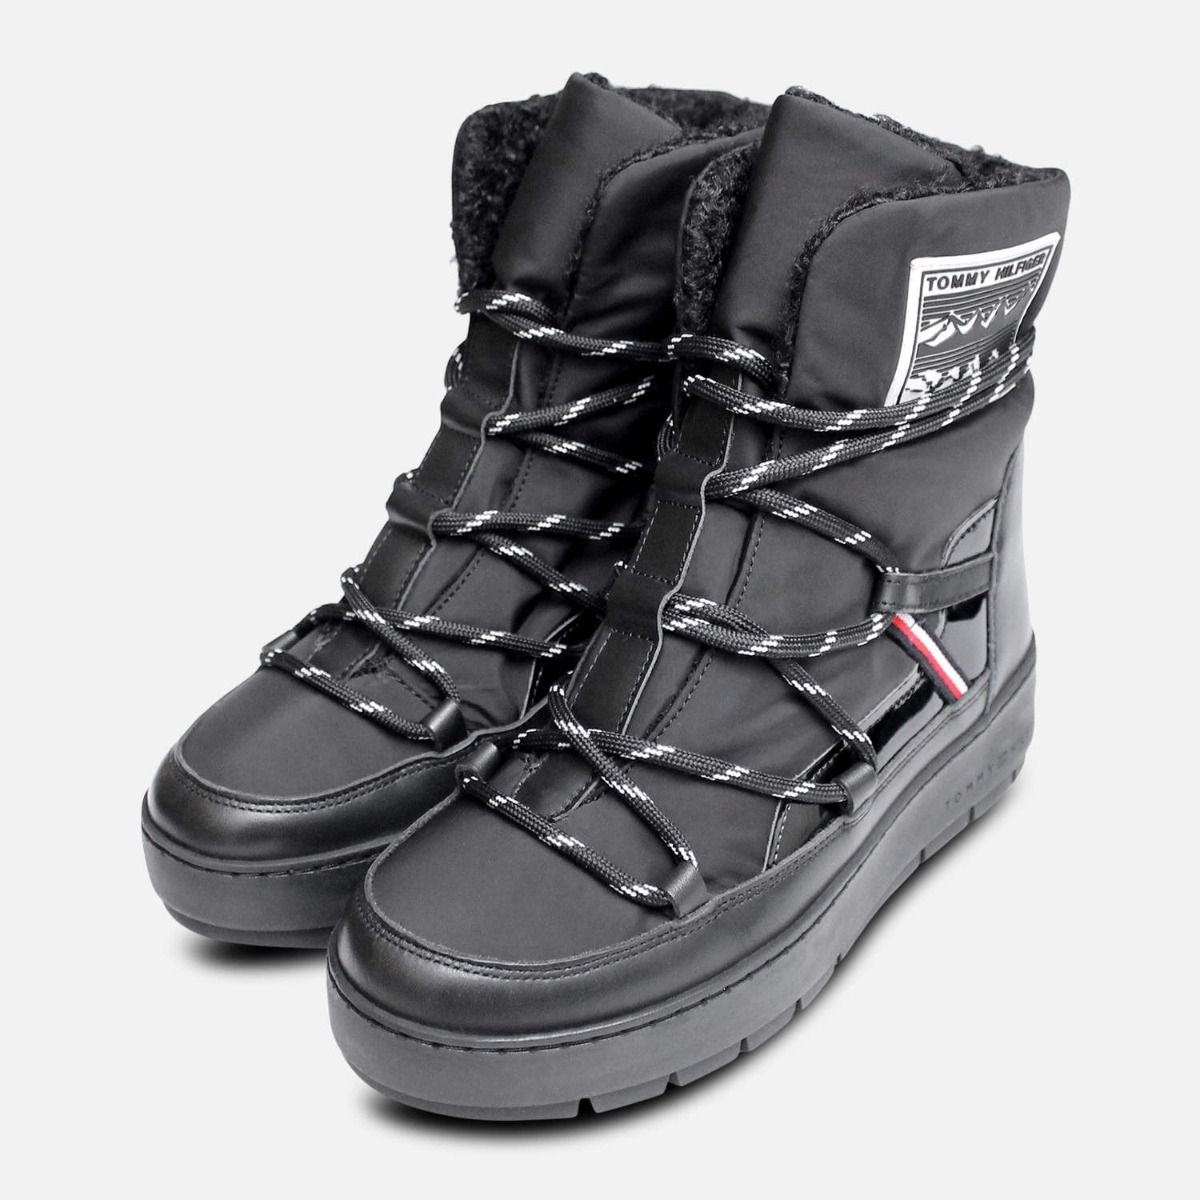 hilfiger snow boots